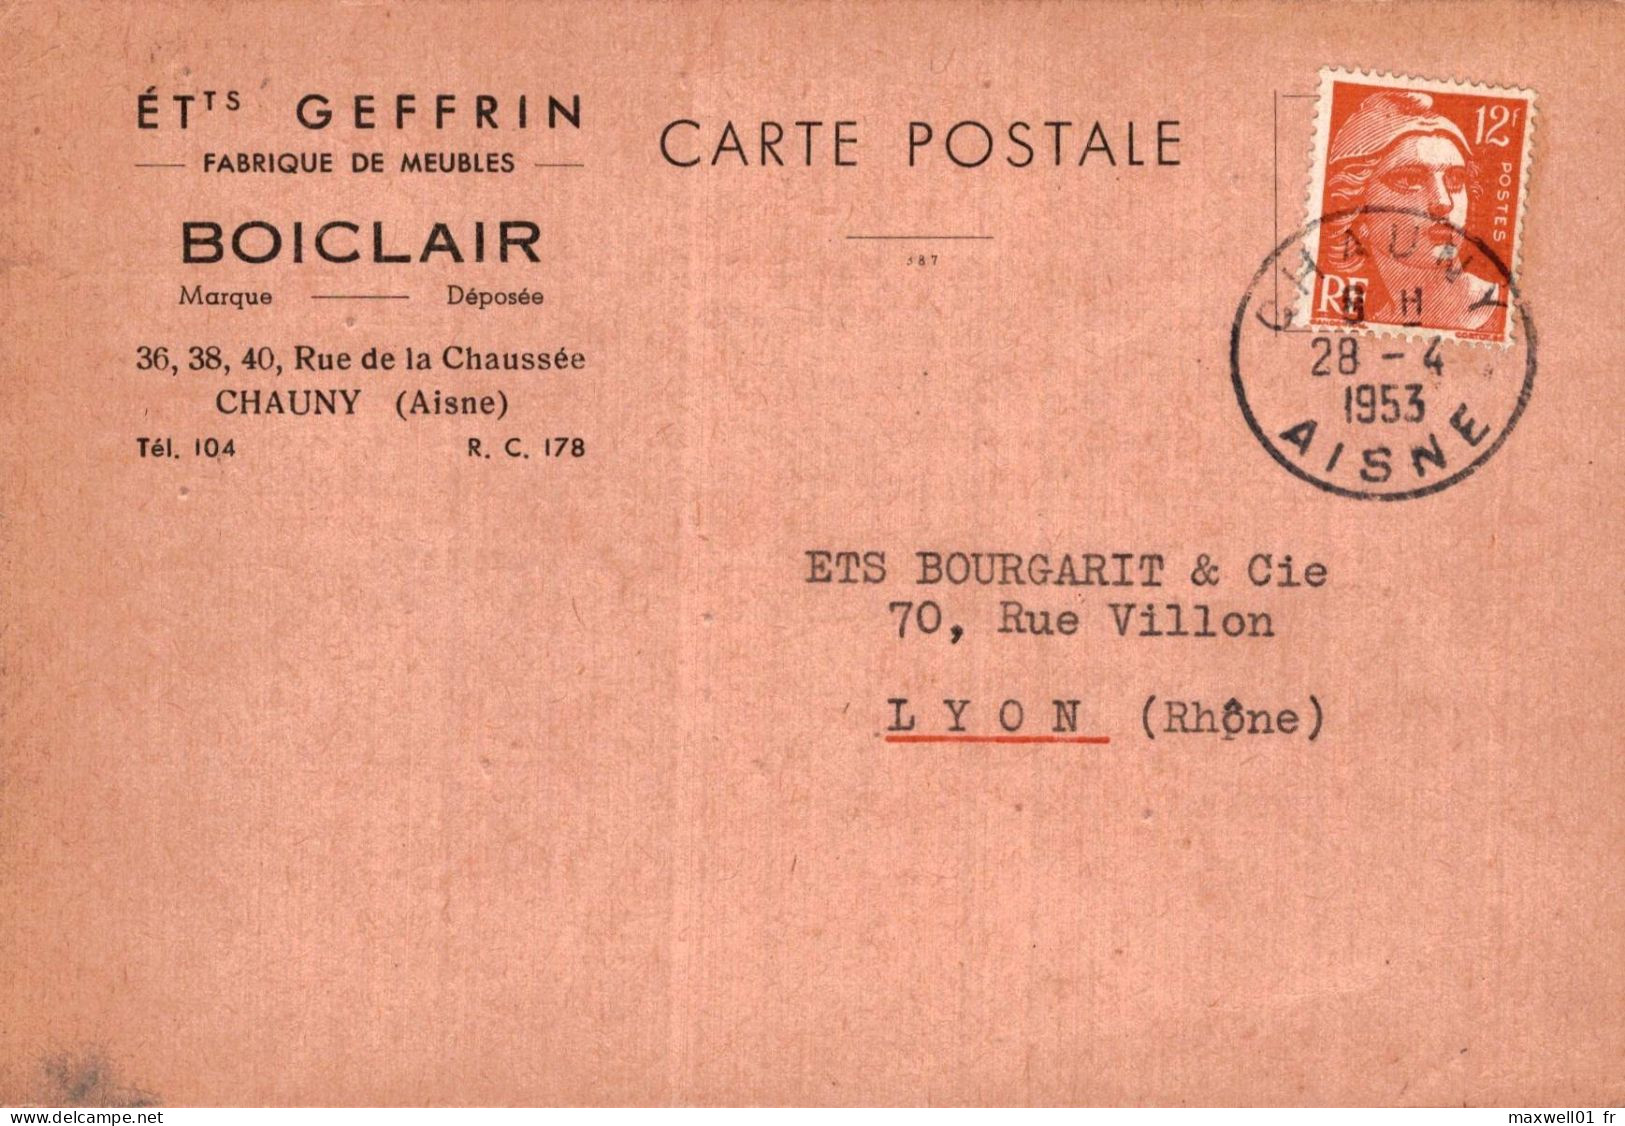 O8 - Carte Postale Publicité - Ets Geffrin - Fabrique De Meubles - Boiclair - Chauny (Aisne) - Advertising